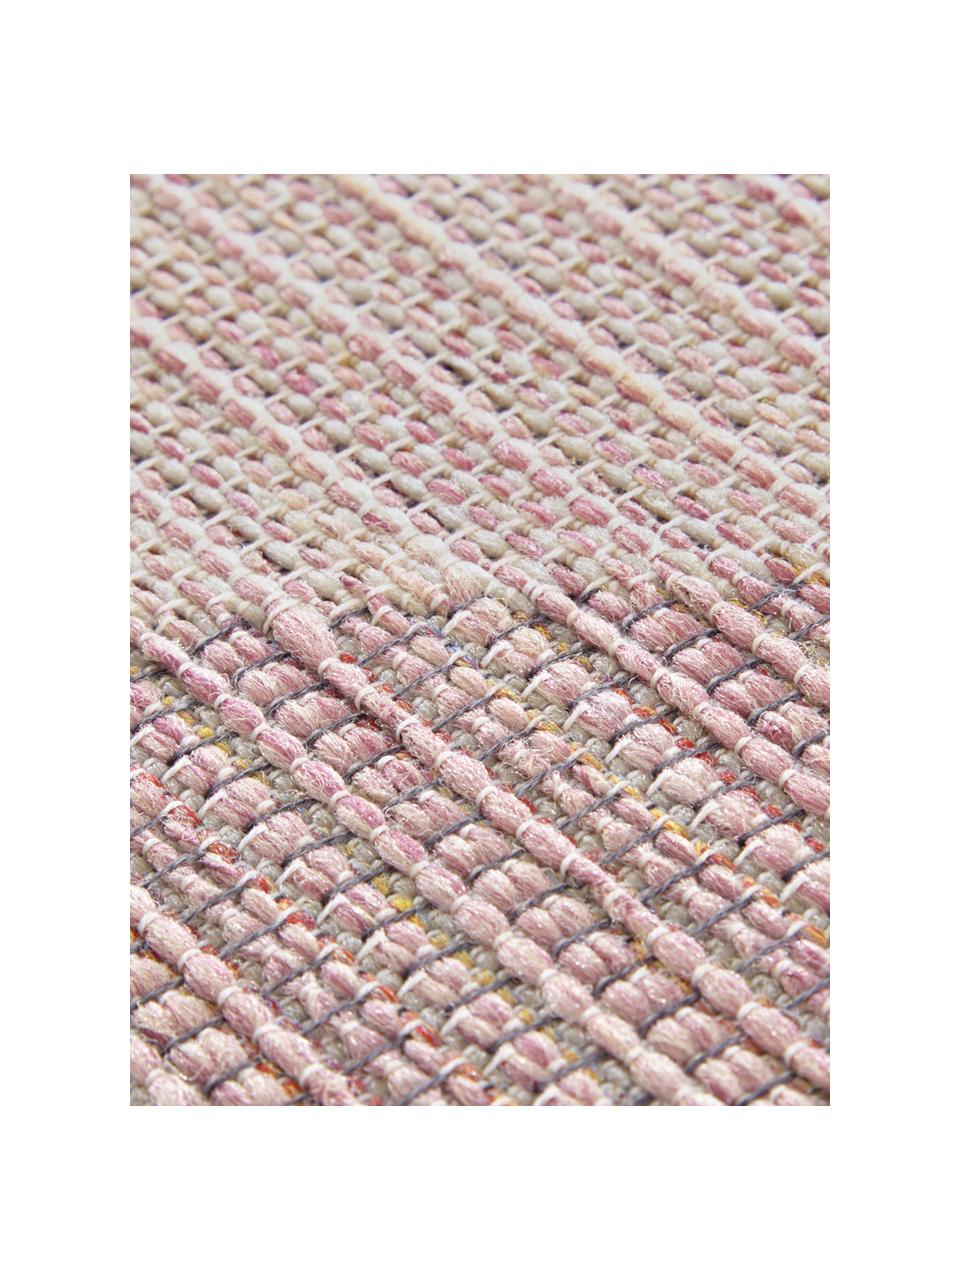 In- und Outdoor Teppich Sevres in Rosatönen, 100% Polypropylen, Rosatöne, Beigetöne, B 200 x L 290 cm (Größe L)